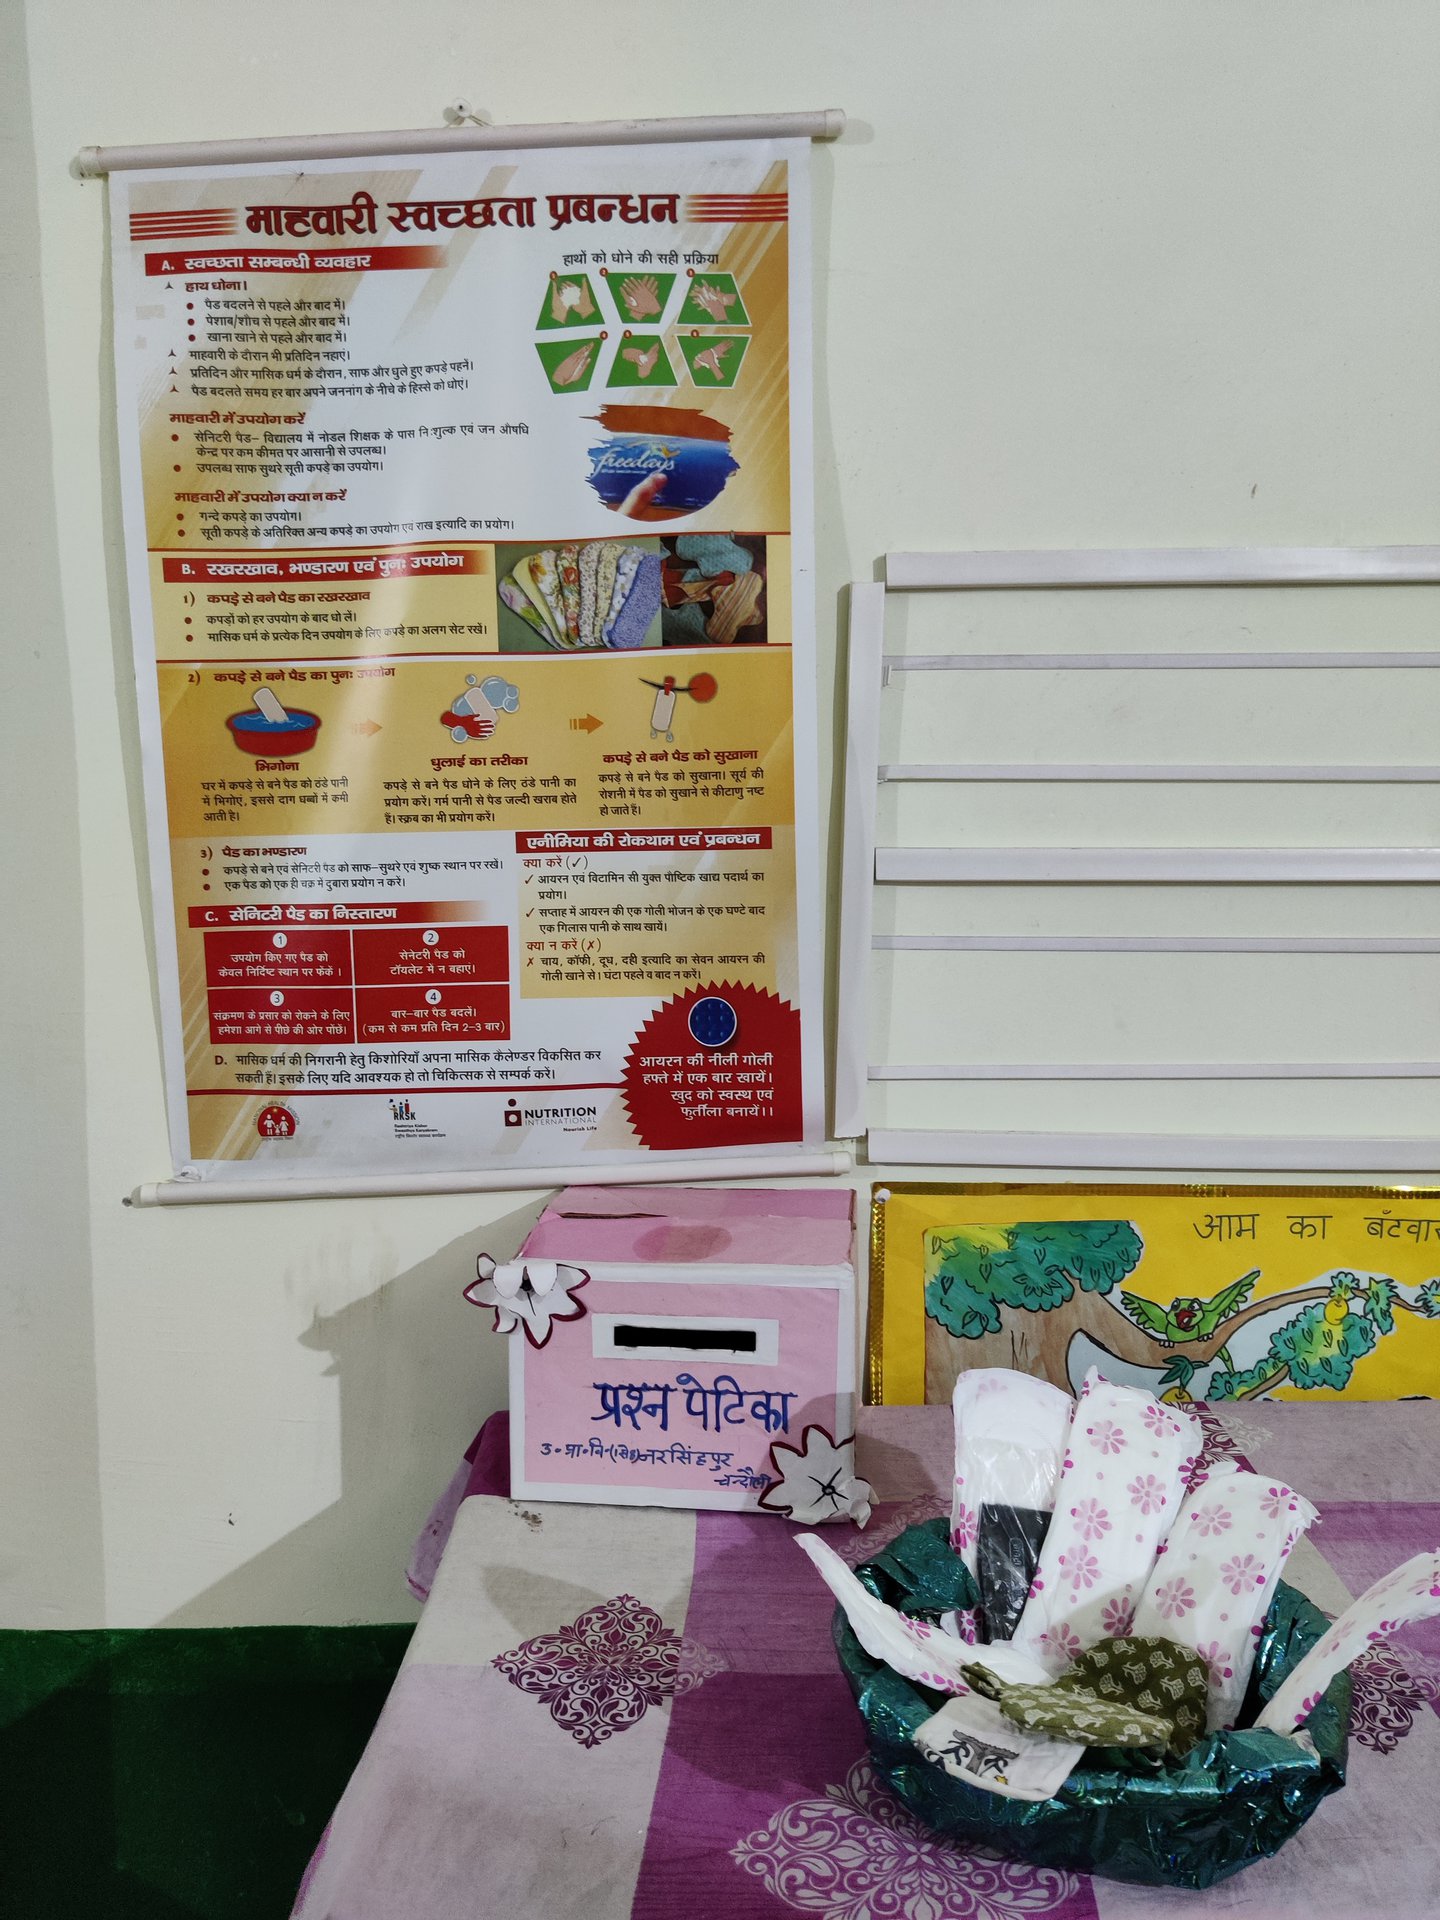 L’initiative met des serviettes hygiéniques menstruelles à la disposition des adolescentes sur une table, dans un panier, devant une affiche qui fournit des informations éducatives sur les règles.